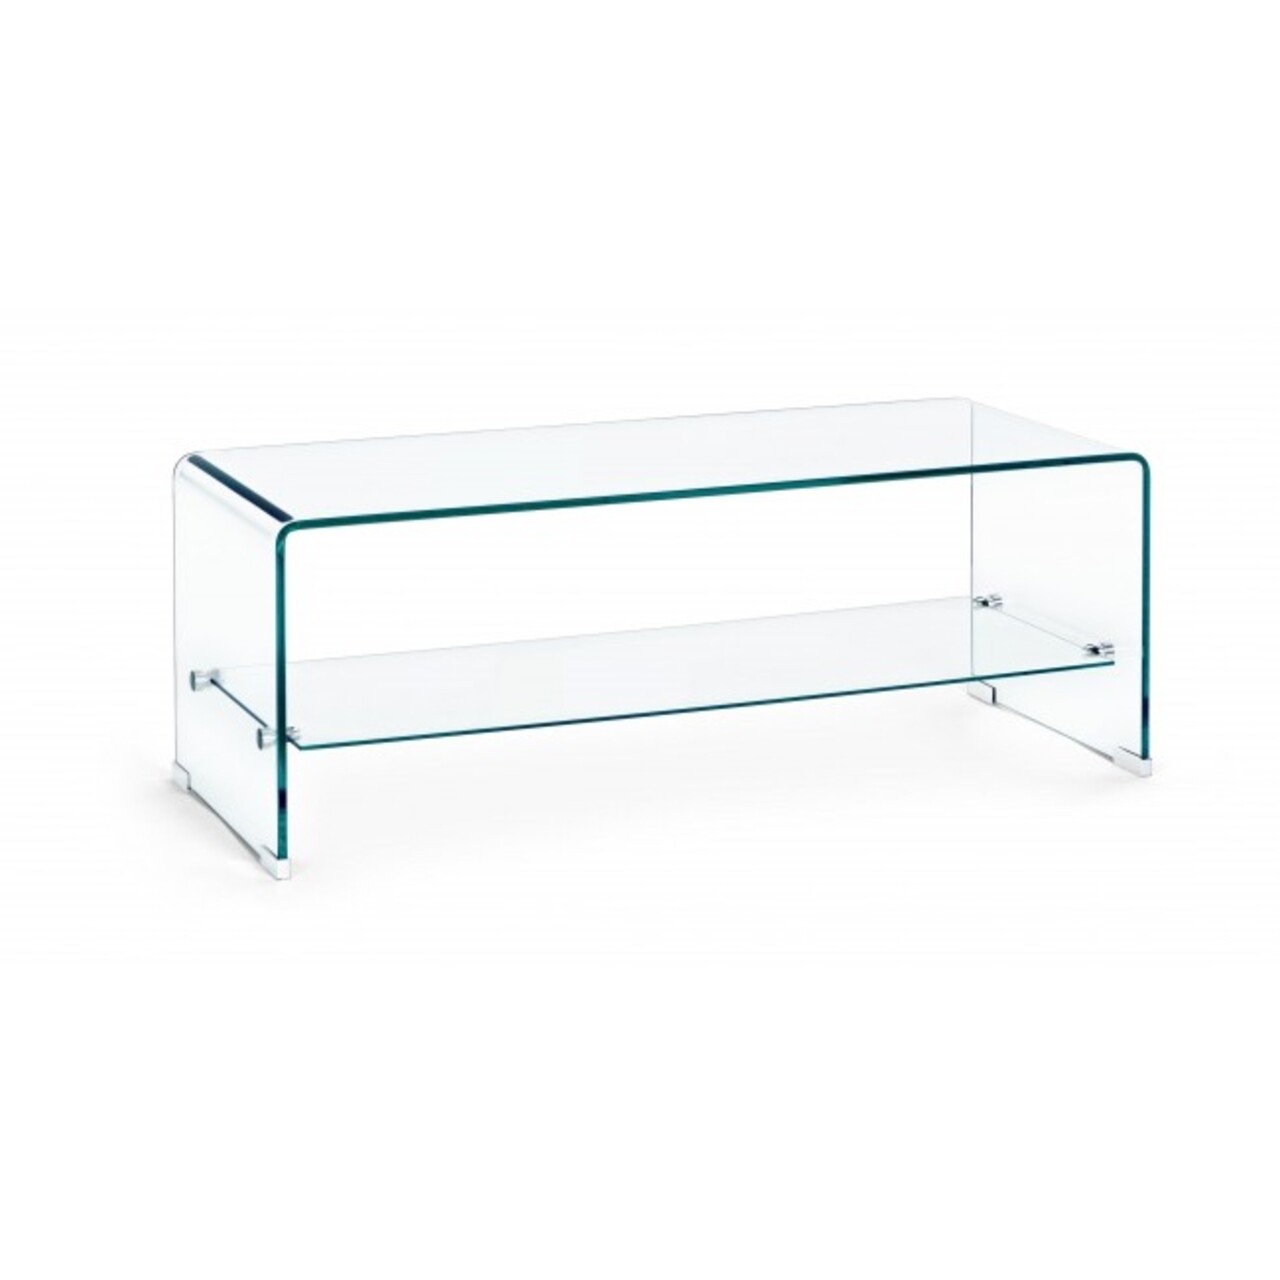 Iride rectangular dohányzóasztal, bizzotto, 100x40x38 cm, üveg